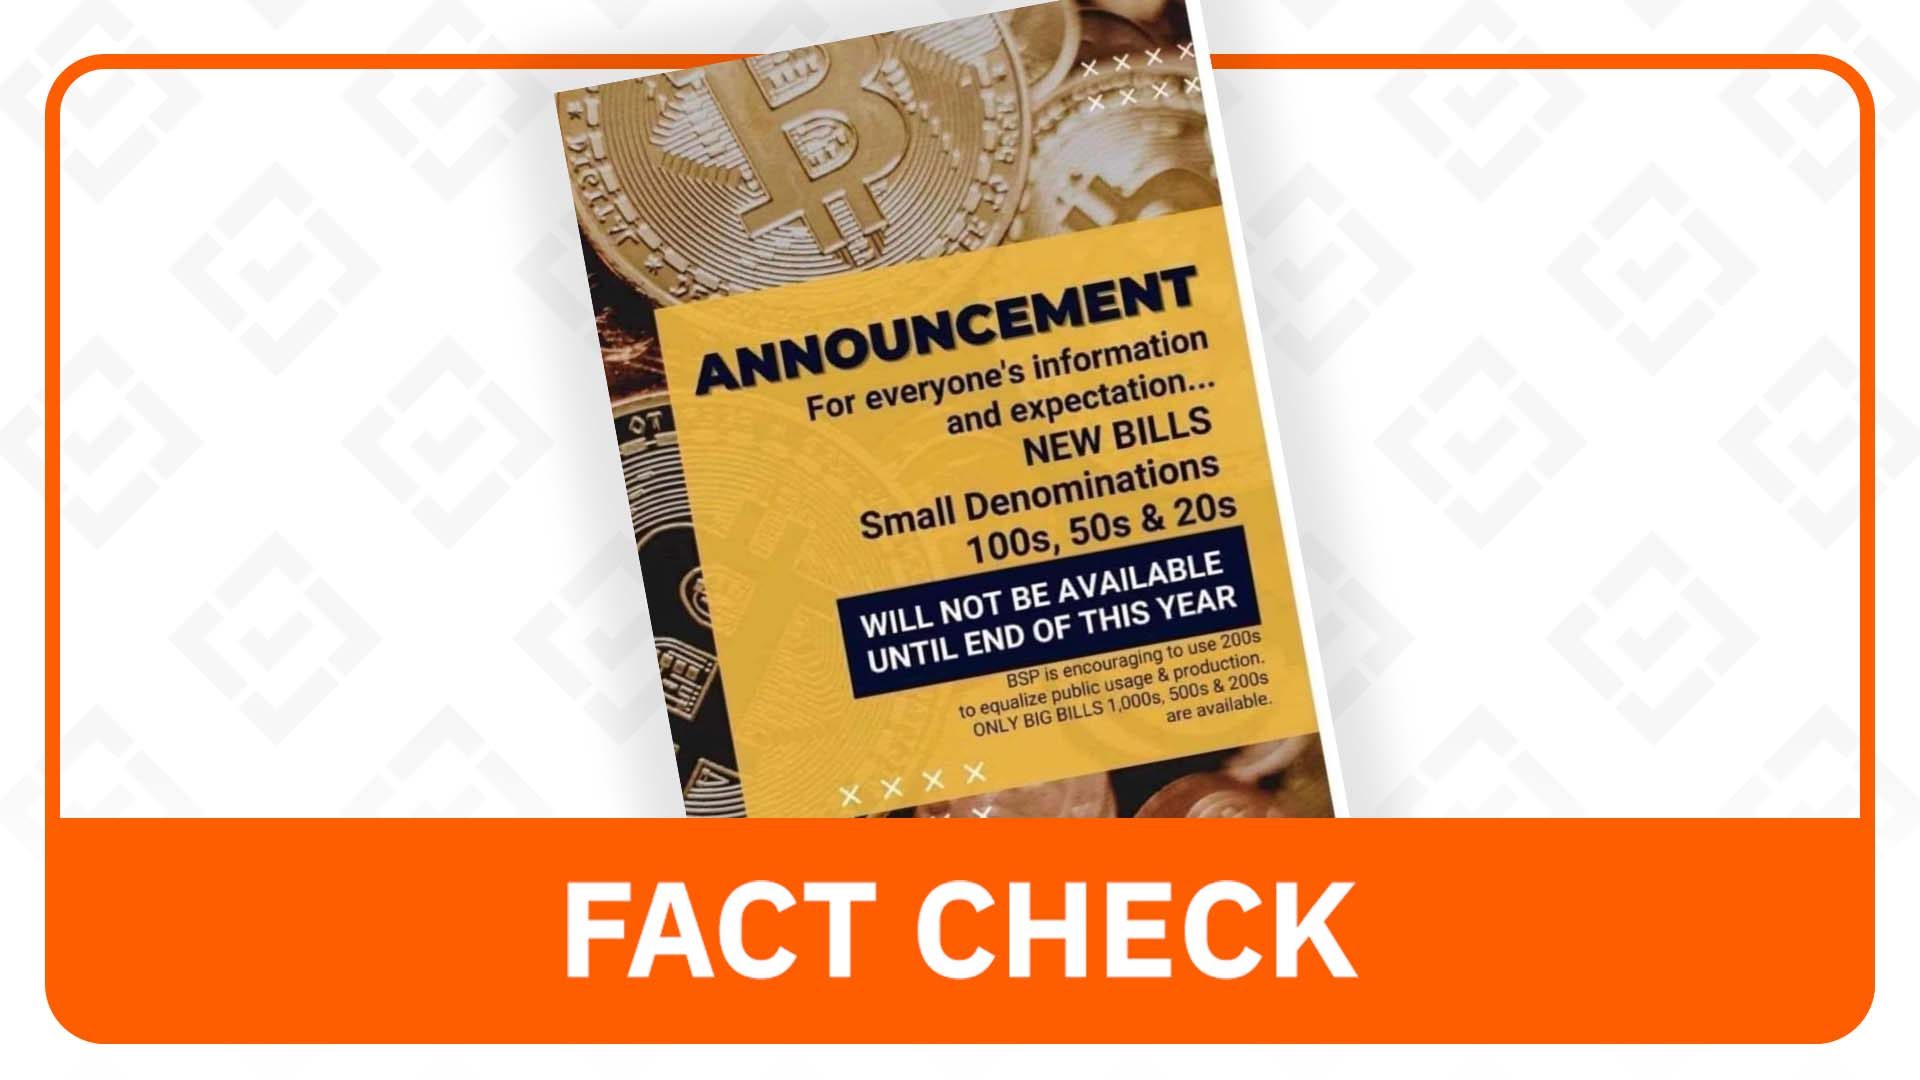 FACT CHECK: BSP still issuing fresh banknotes, small denomination bills